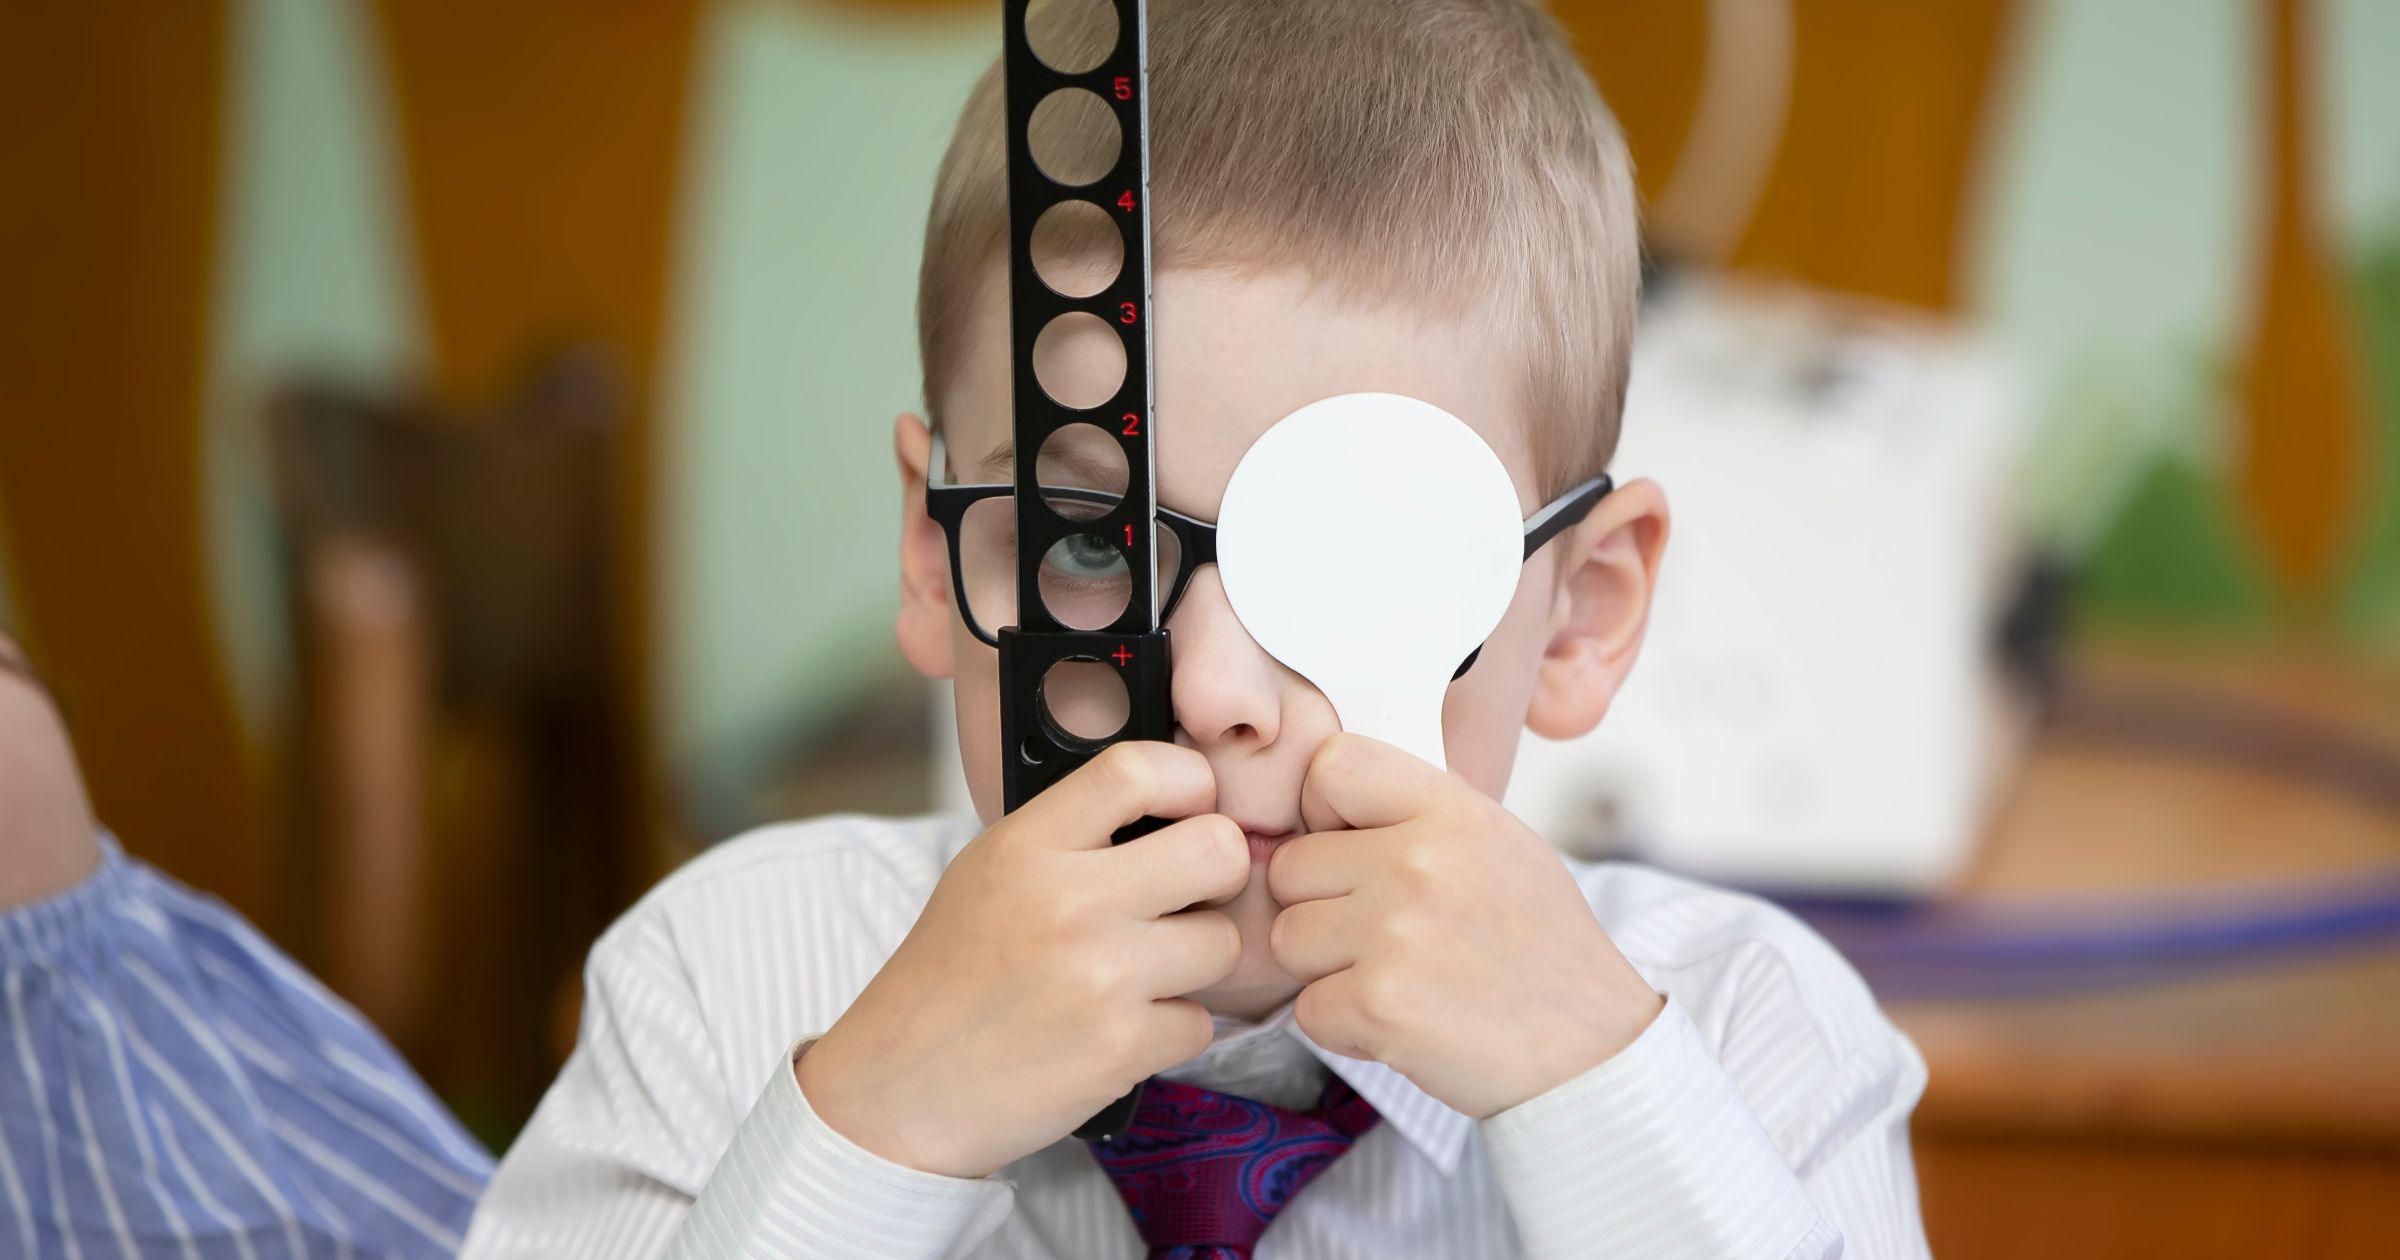 La importancia de cuidar la salud visual en la infancia  